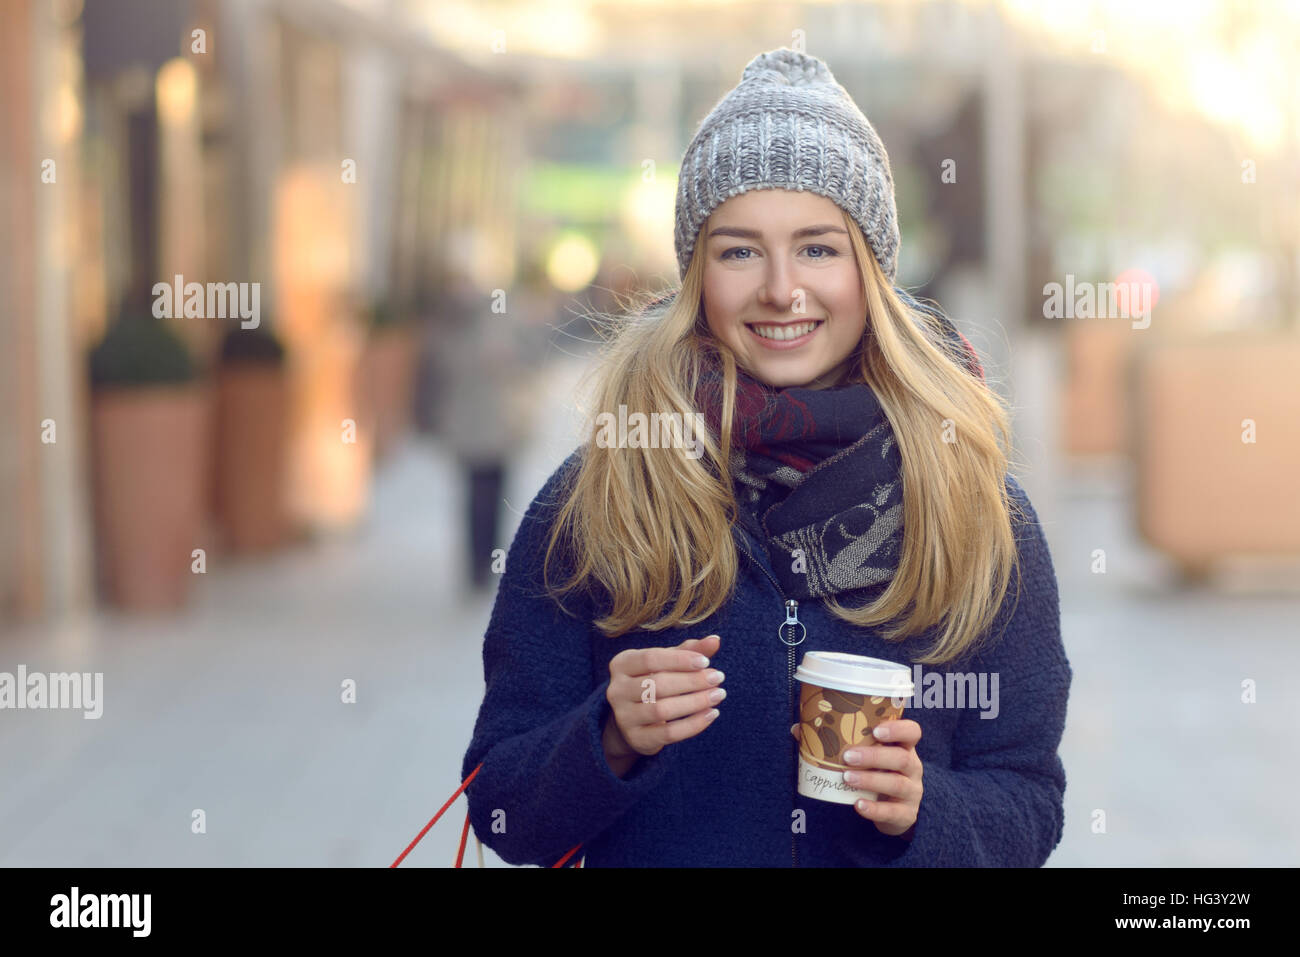 Merveilleuse jeune femme sur les achats de Noël dans un Chapeau hiver tricotés qu'il souriant derrière son regard tout en marchant dans une rue urbaine Banque D'Images